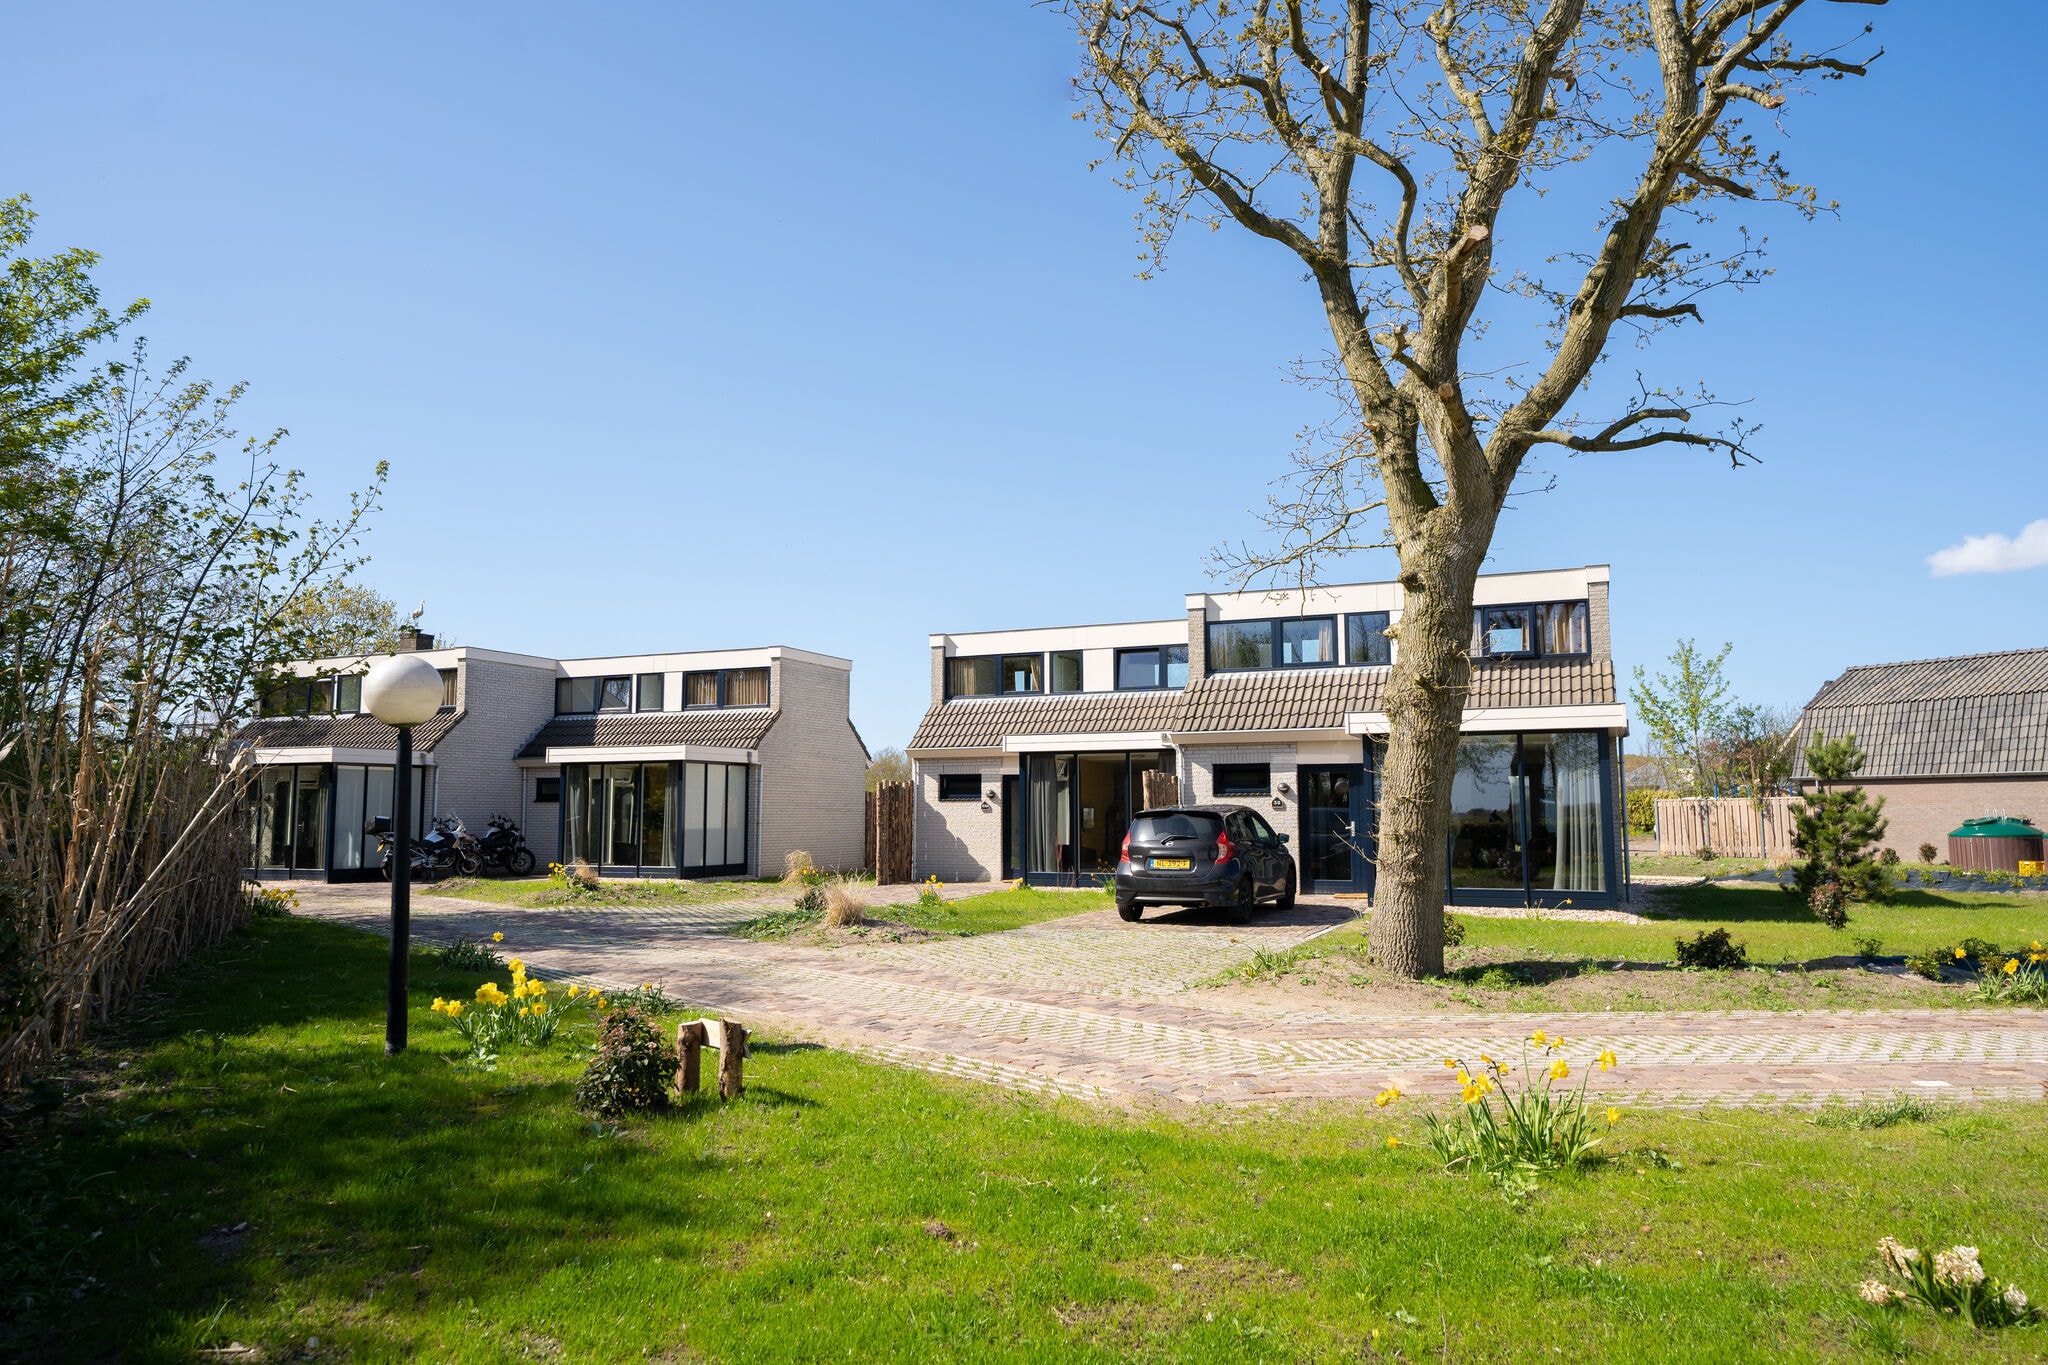 Jolie maison avec lave-vaisselle dans un parc de vacances, situé sur Texel